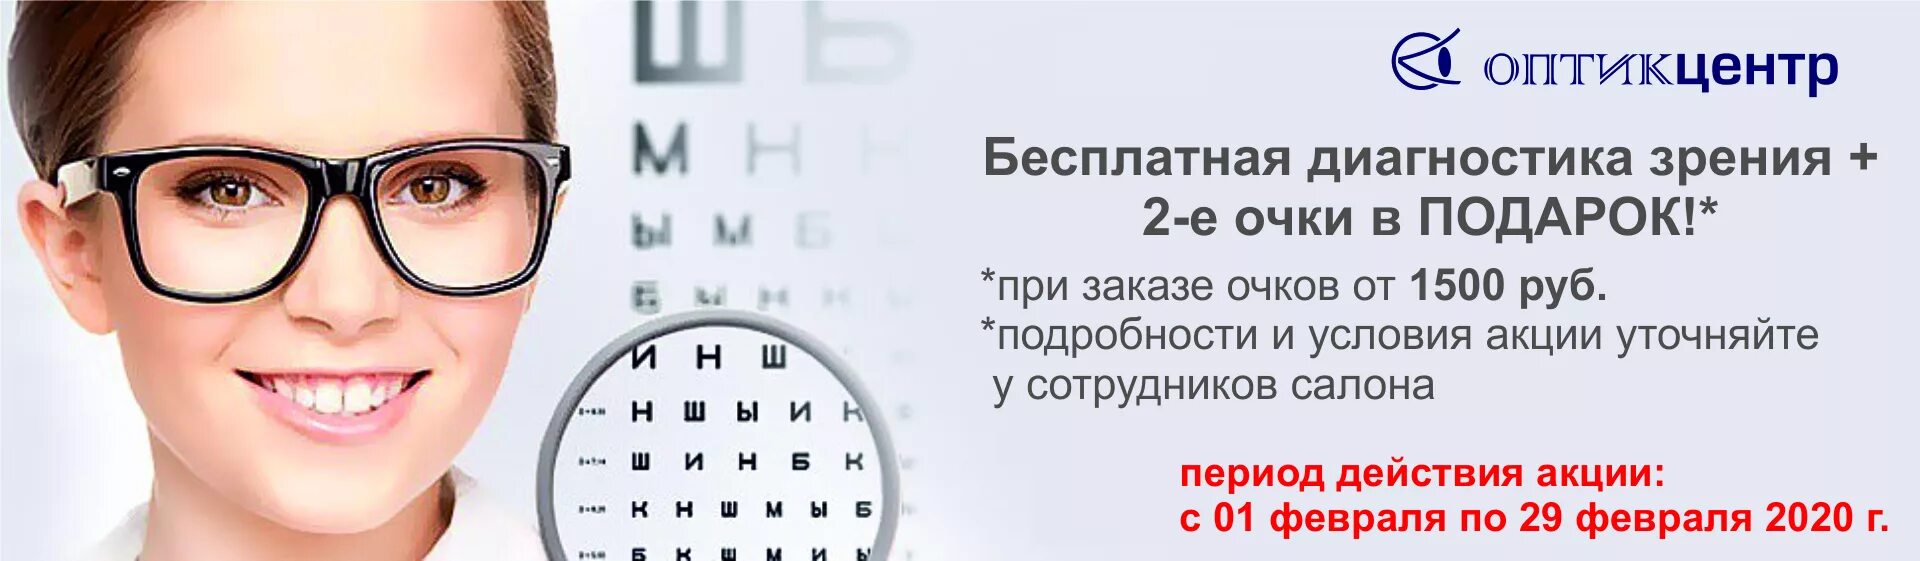 Проверка зрения реклама. Очки для зрения баннер. Реклама очков для зрения. Очки офтальмолога. Зрение сайт новосибирск